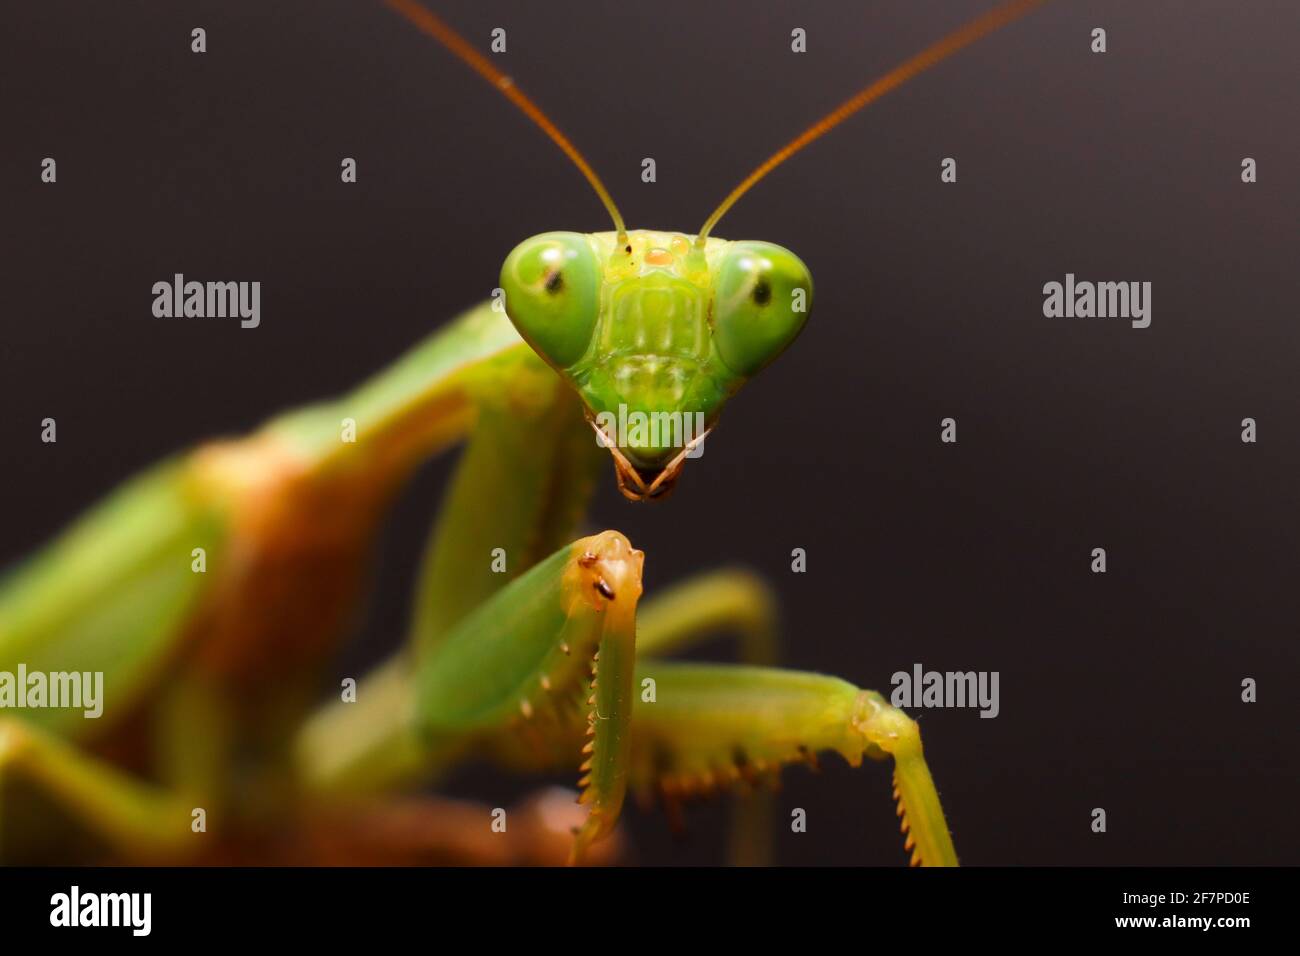 Female European Mantis or Praying Mantis, Mantis Religiosa. Green praying mantis. Close up Stock Photo